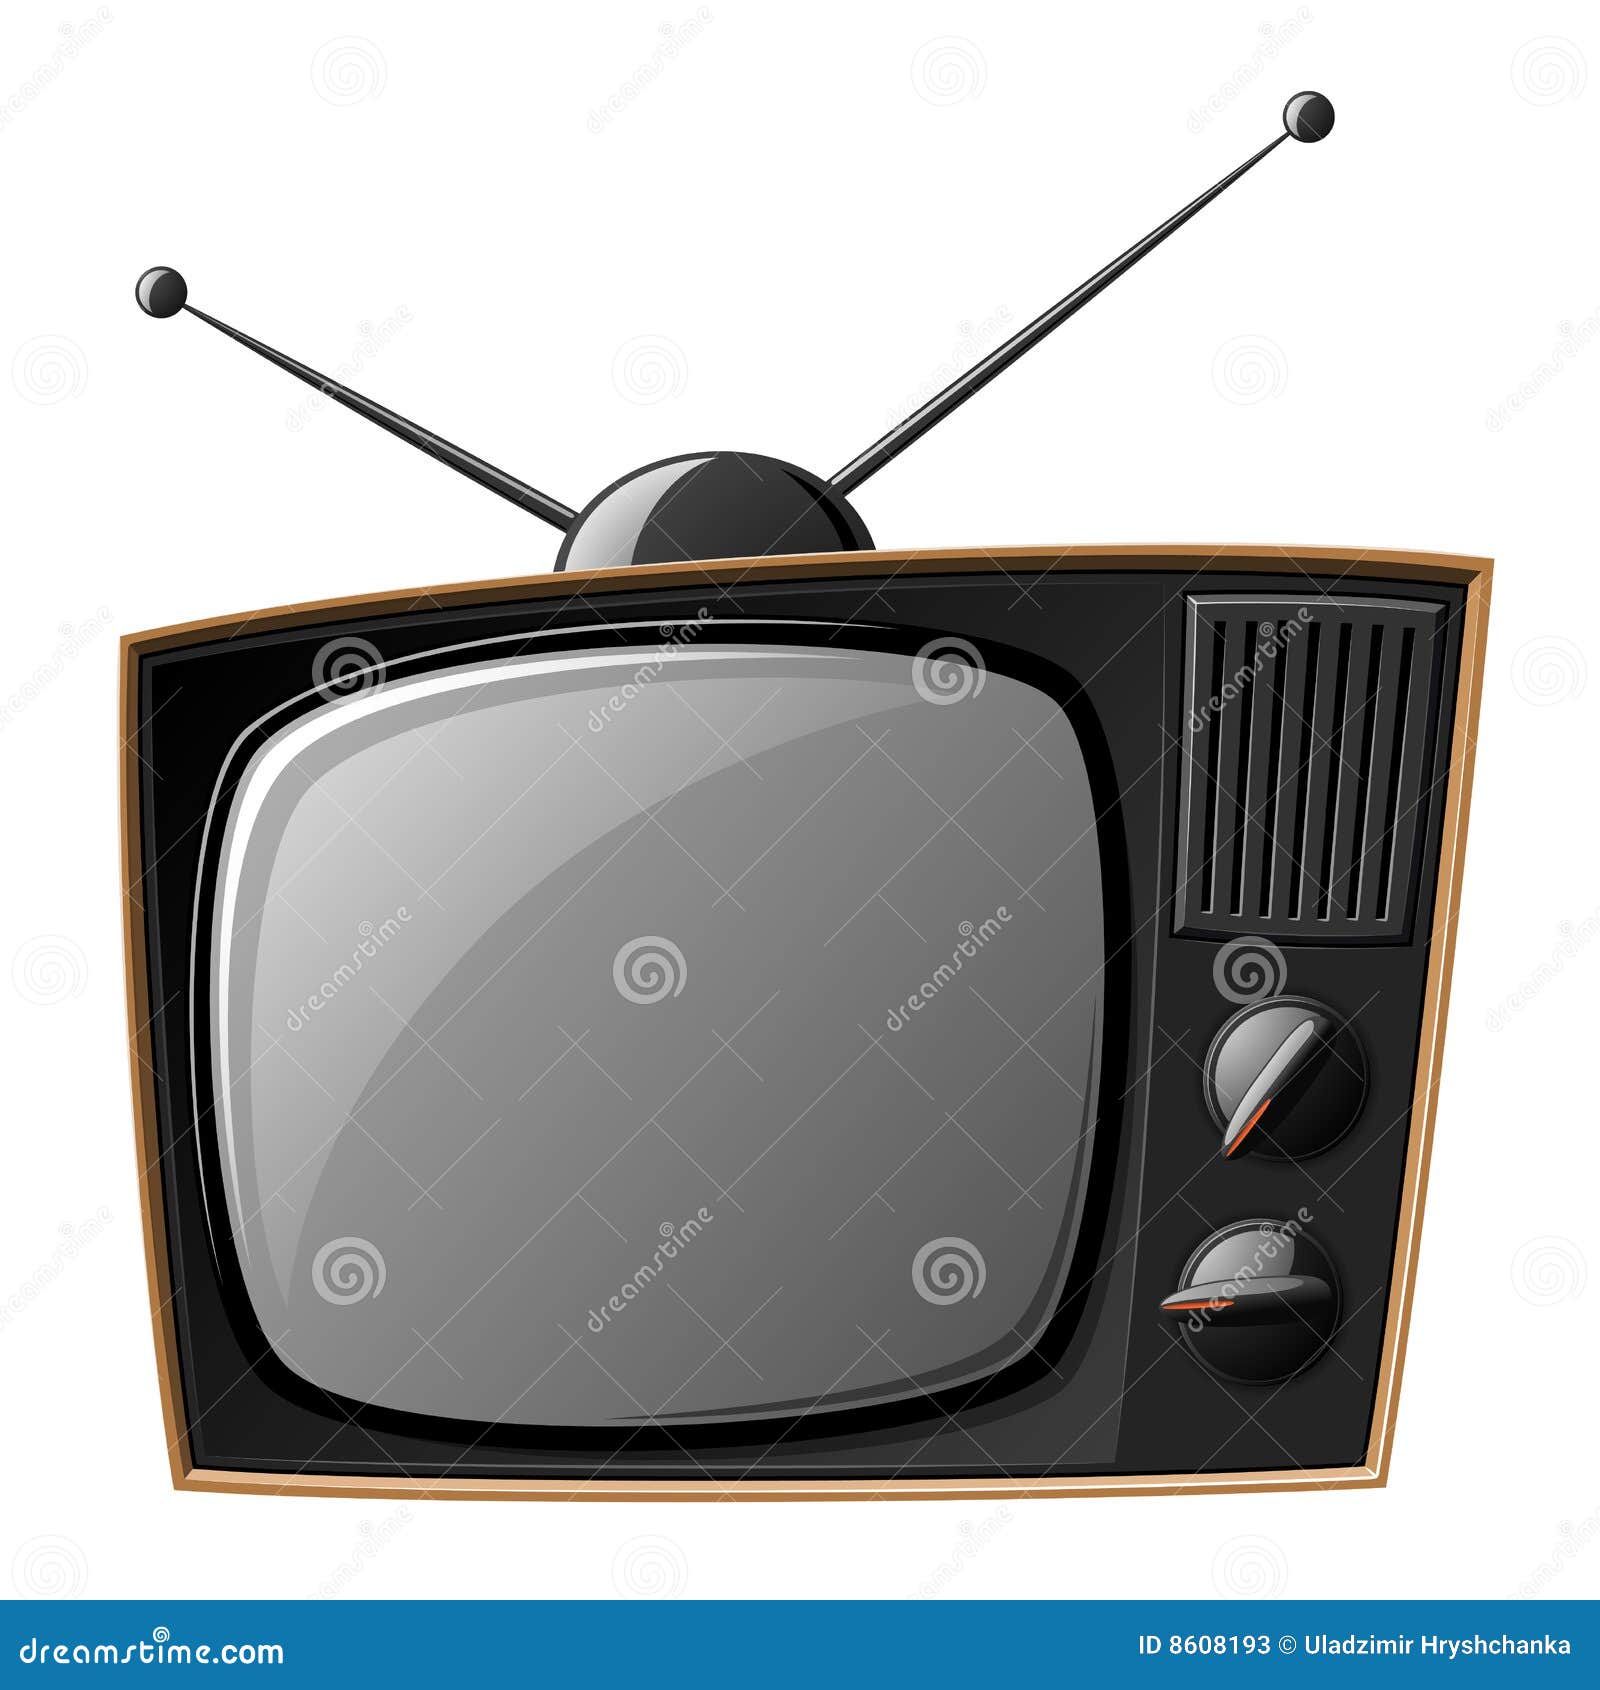 Телевизор показывает с антенной. Телевизор с антенной. Антенна для телевизора. Старый телевизор с антенной. Советский телевизор с антенной.